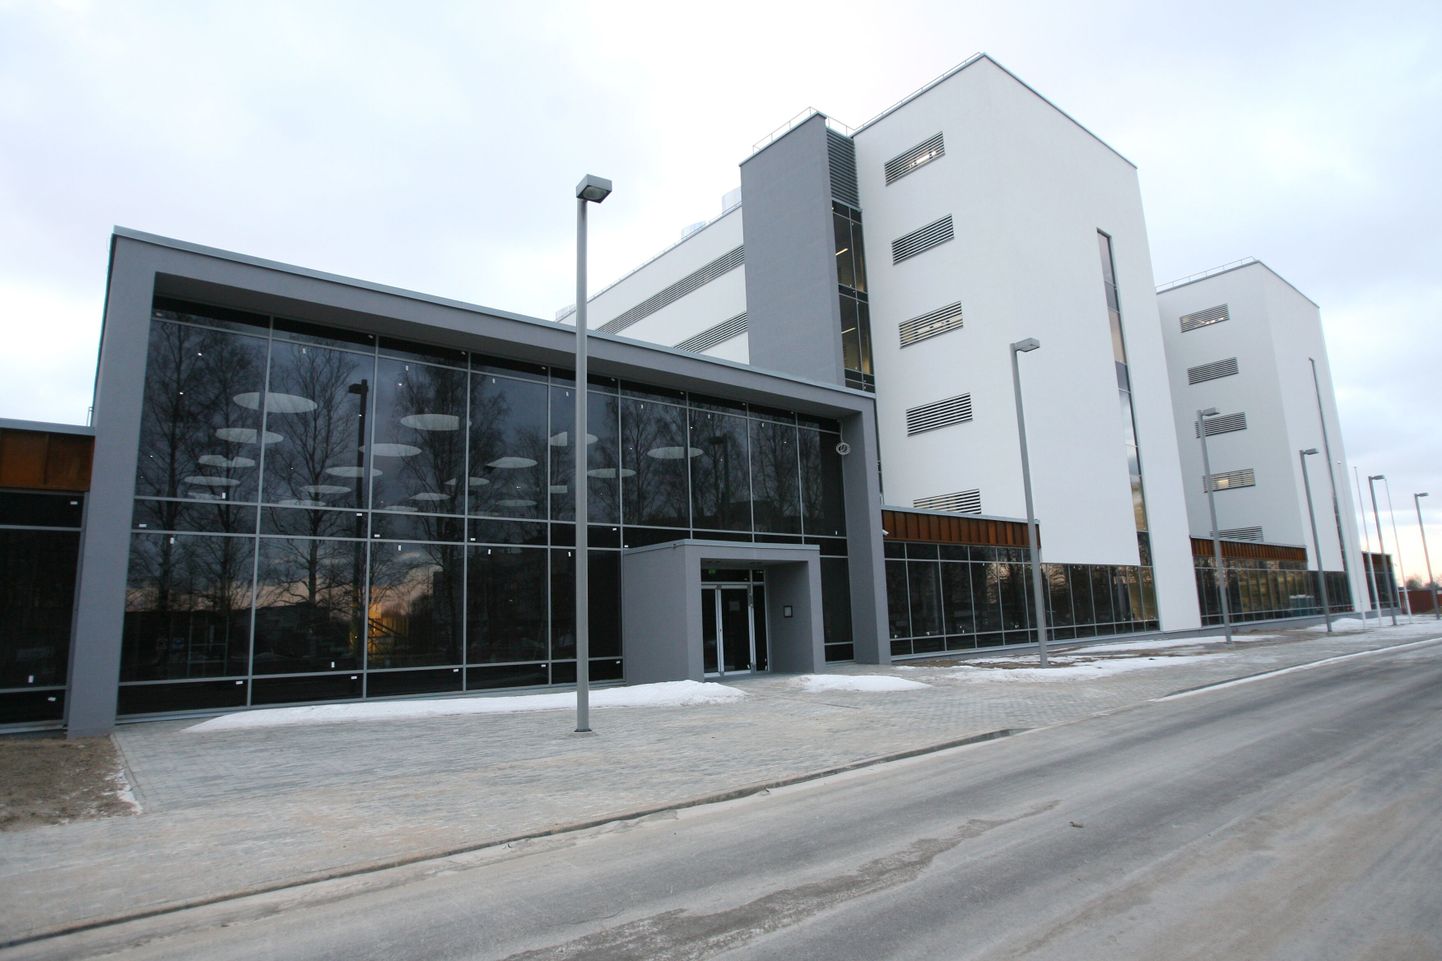 Mullune kalleim uusehitis, mis sai ka linna tunnustuse, on Tartus Ravila 14a avatud Tartu Ülikooli uus keemiahoone, mis läks koos sisustusega maksma 520 miljonit krooni.